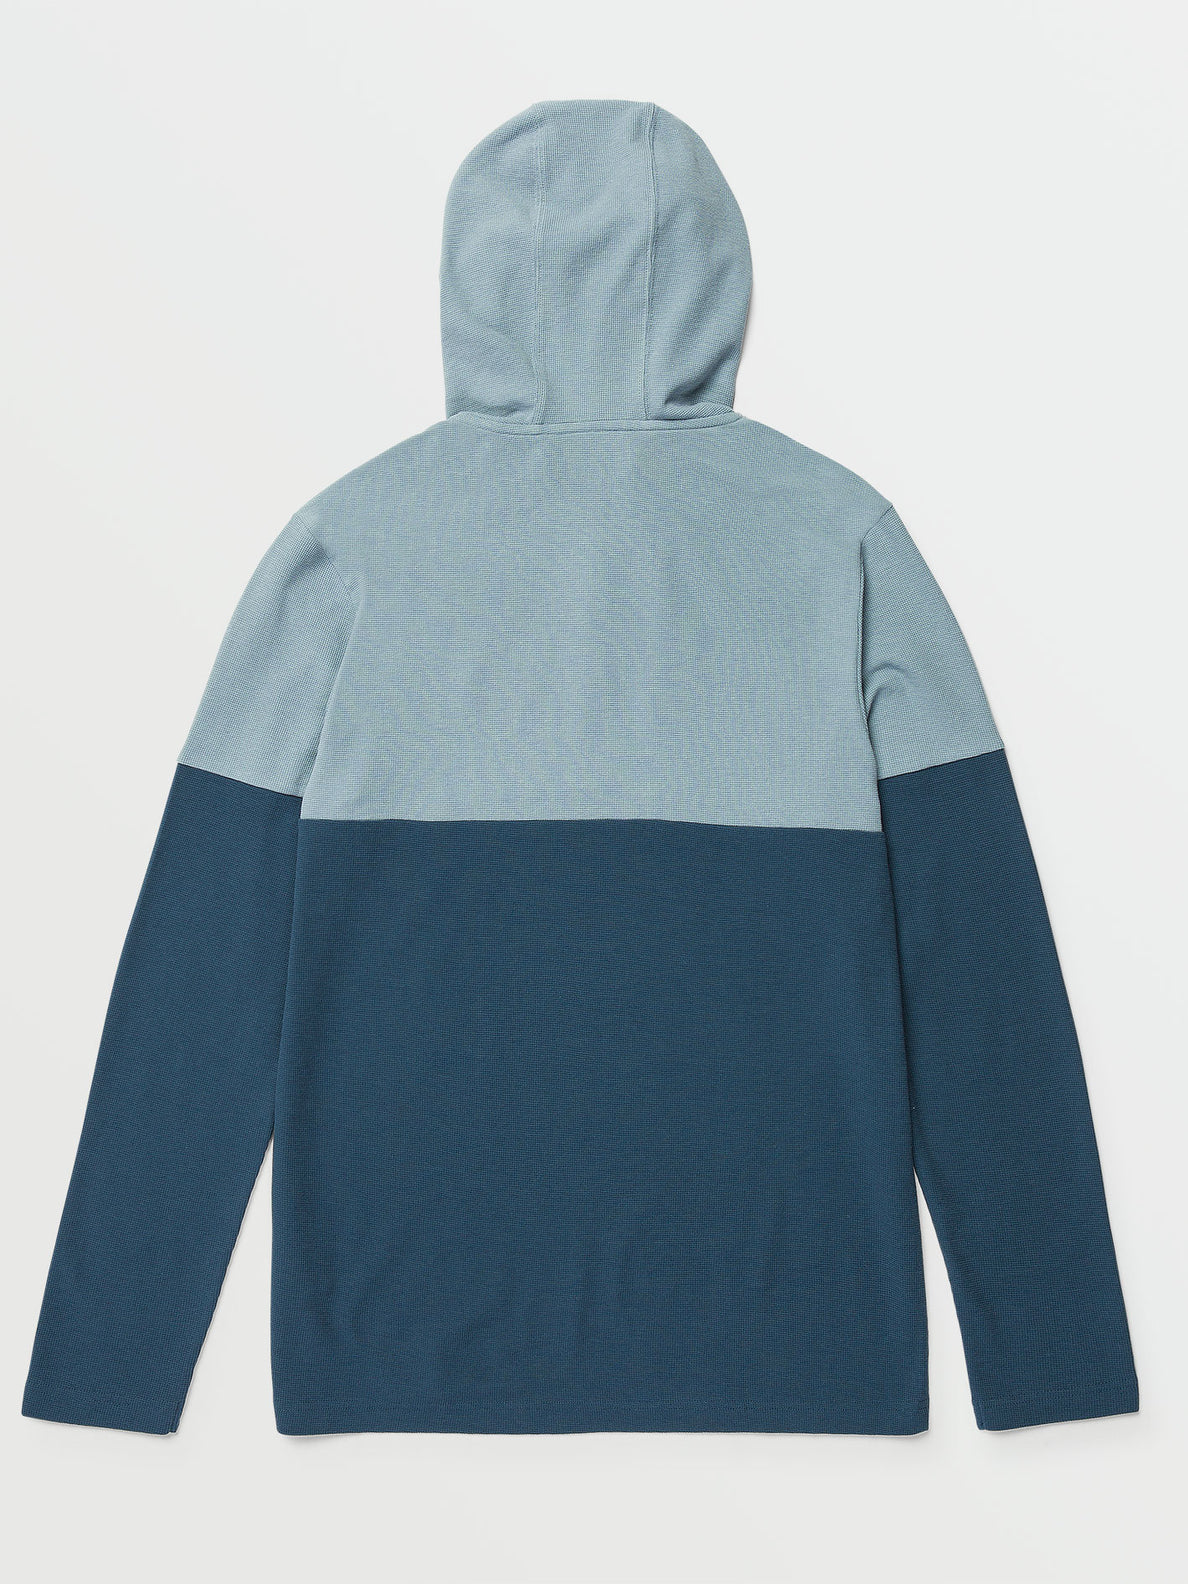 Nunez Colorblocked Thermal Shirt - Smokey Blue